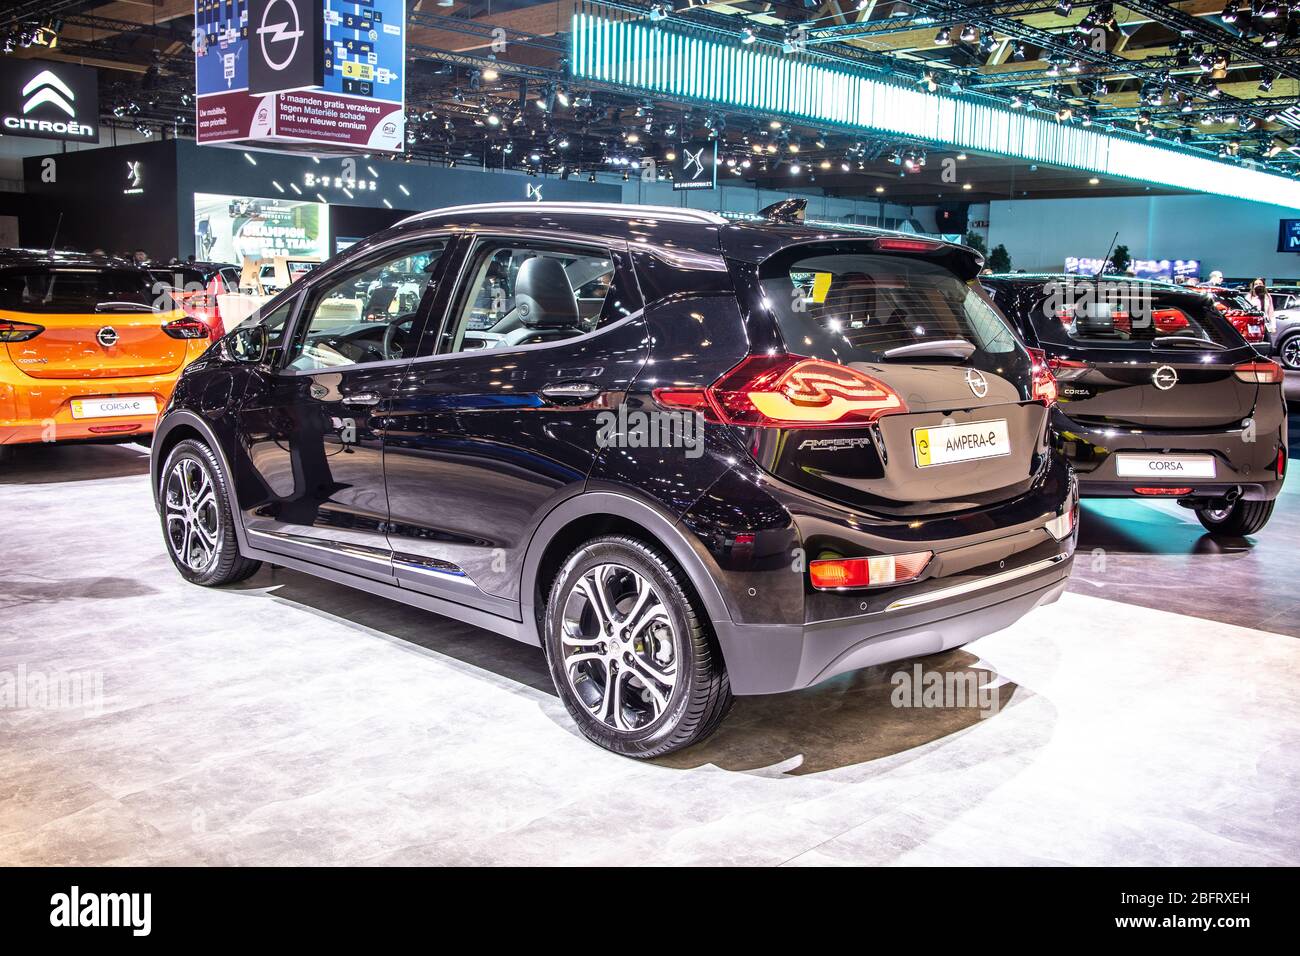 Bruxelles, Belgique, Jan 09, 2020: Métal noir électrique OPEL AMPERA-E au salon de l'automobile de Bruxelles, vendu comme Chevrolet Bolt EV aux Etats-Unis Banque D'Images